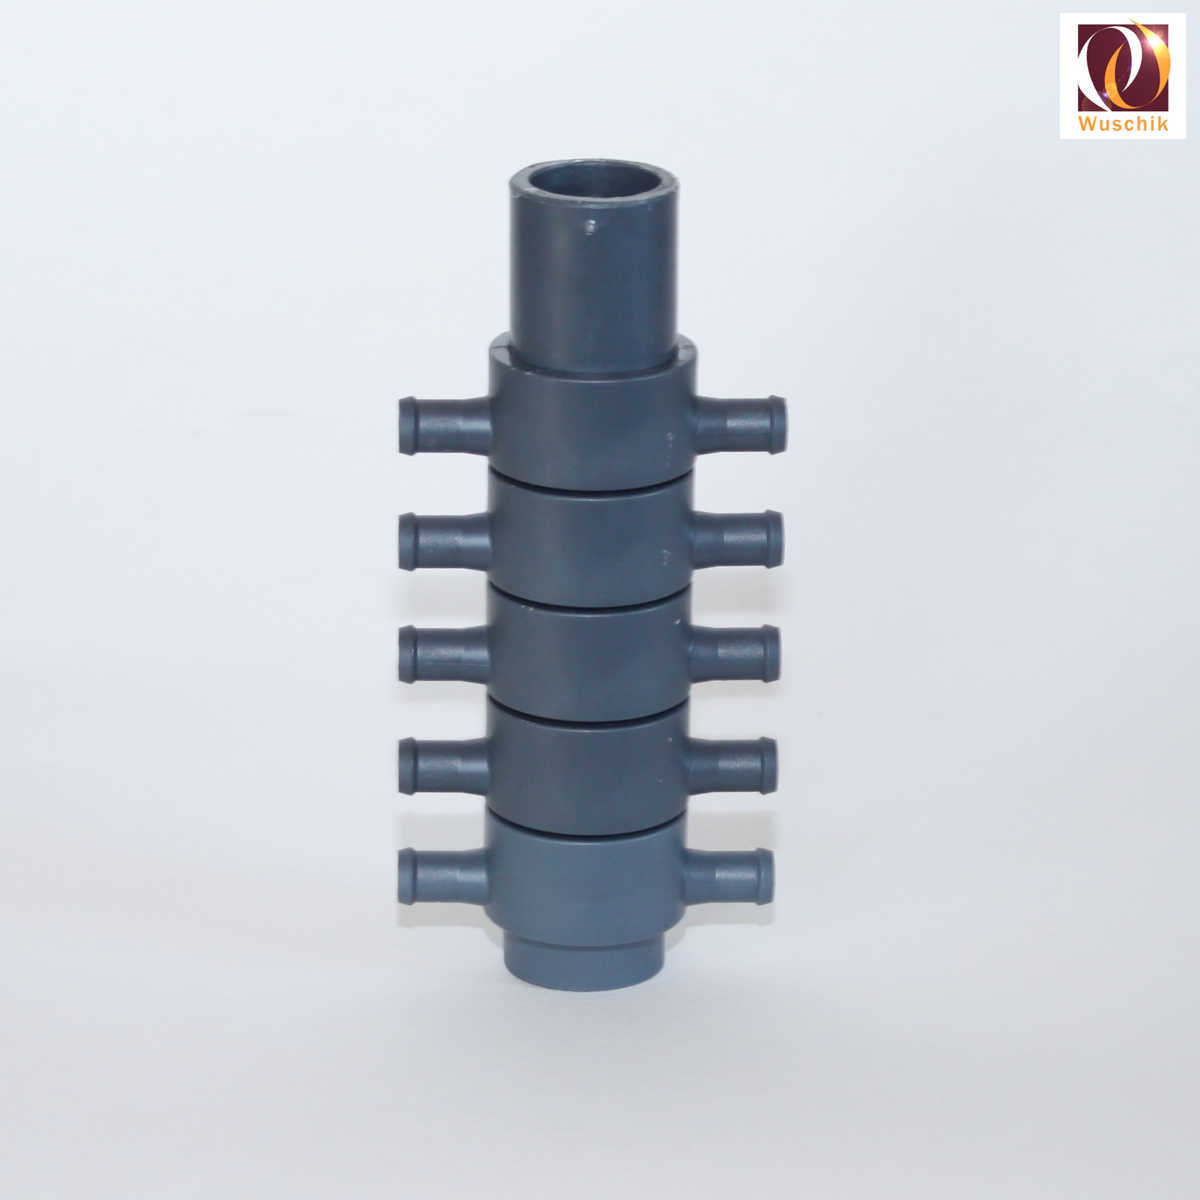 Verteiler-10-fach-10-mm-schlauchanschluss-distributor-manifold-hose-32mm-inlet